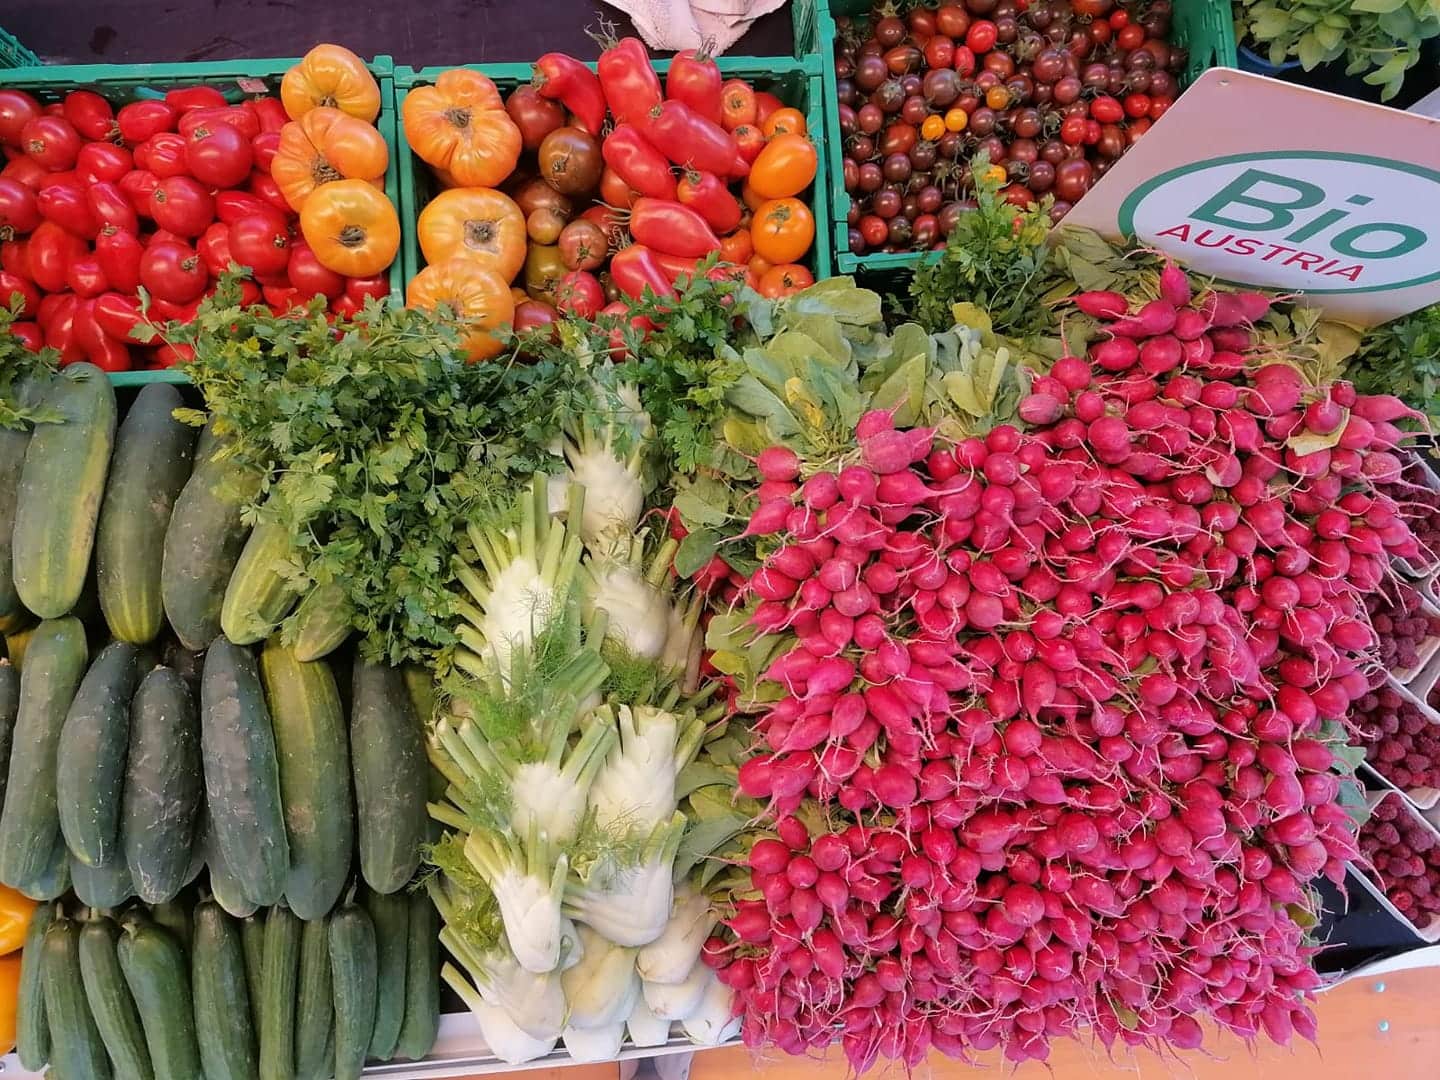 Bio einkaufen bei Erdengold am Benediktinermarkt. Es gibt verschiedenes Bio-Gemüse wie Paprika, Zucchini, Jungzwiebel, Radieschen, Salat und Tomaten, alles frisch und direkt aus Klagenfurt am Wörthersee